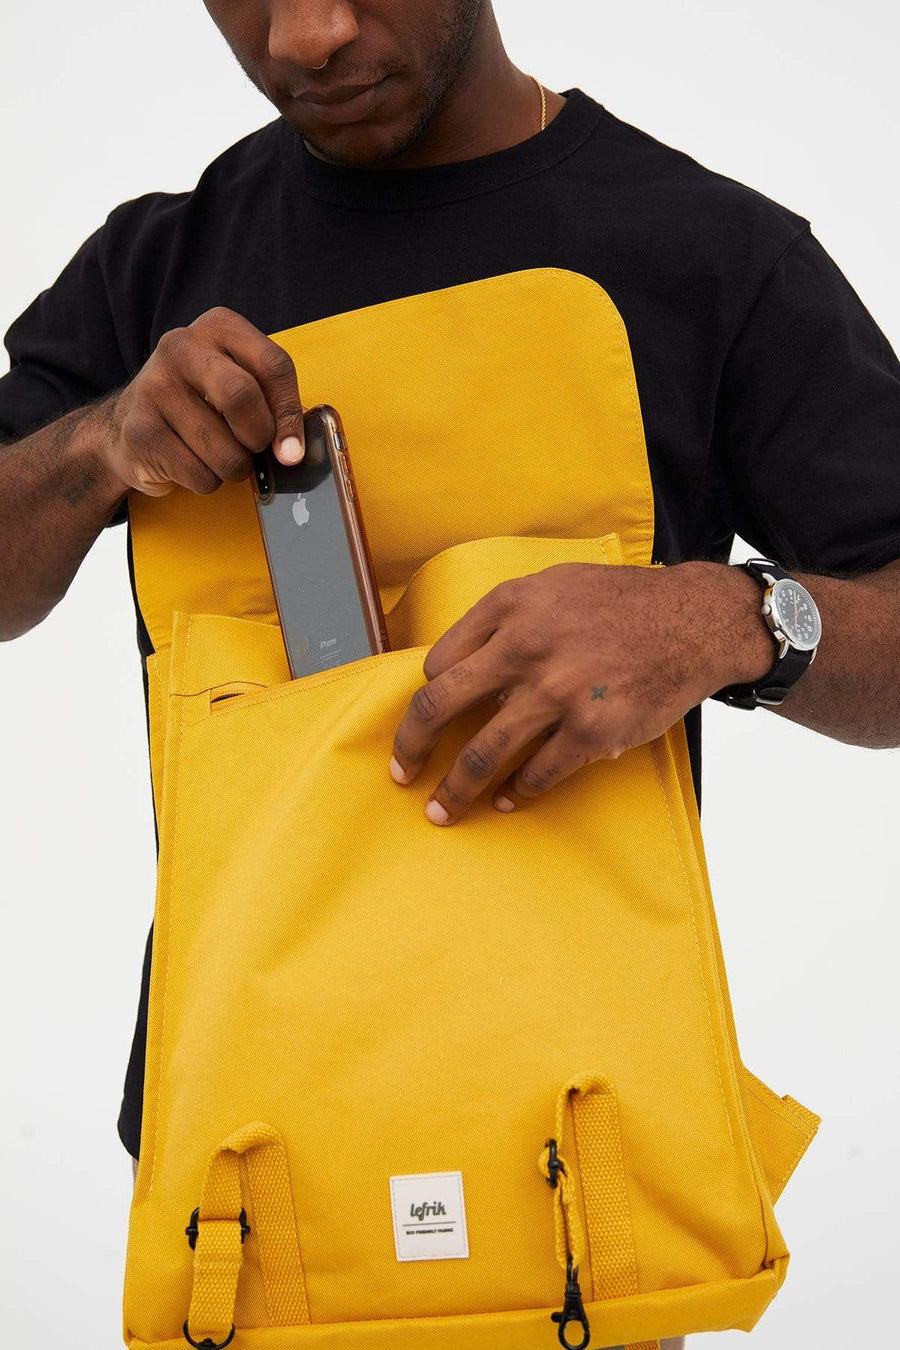 Lefrik Handy Mustard Metal Hook Backpack Rucksack